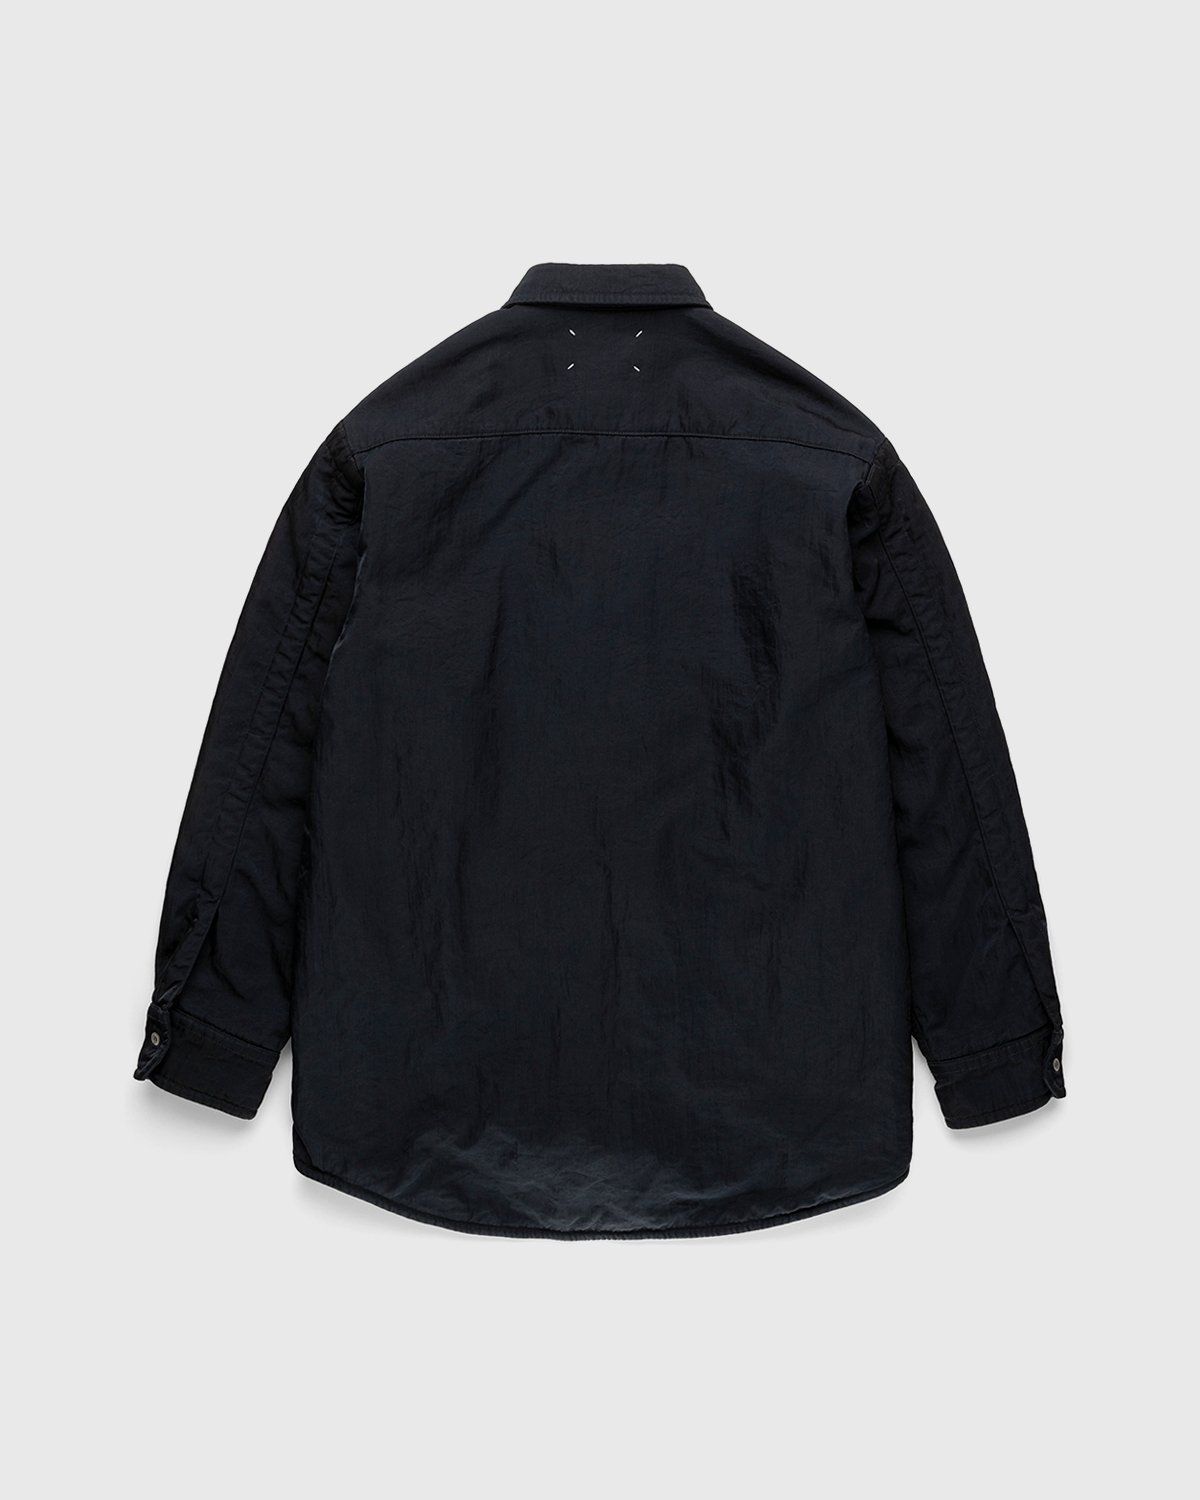 Maison Margiela – Oversized Nylon Jacket Navy - Shirts - Black - Image 2